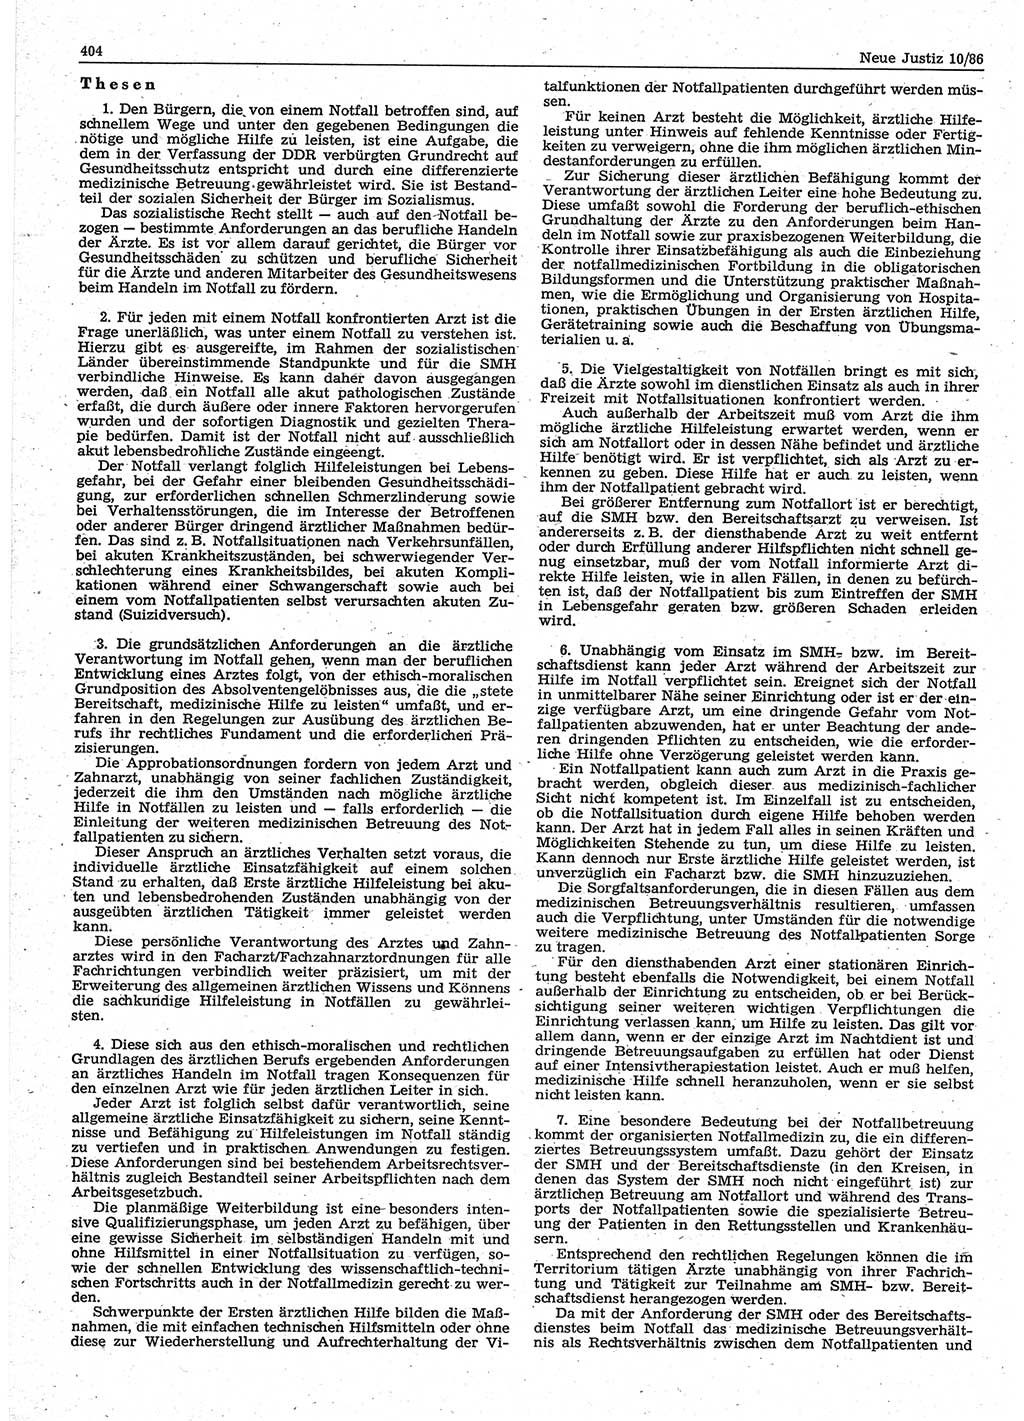 Neue Justiz (NJ), Zeitschrift für sozialistisches Recht und Gesetzlichkeit [Deutsche Demokratische Republik (DDR)], 40. Jahrgang 1986, Seite 404 (NJ DDR 1986, S. 404)